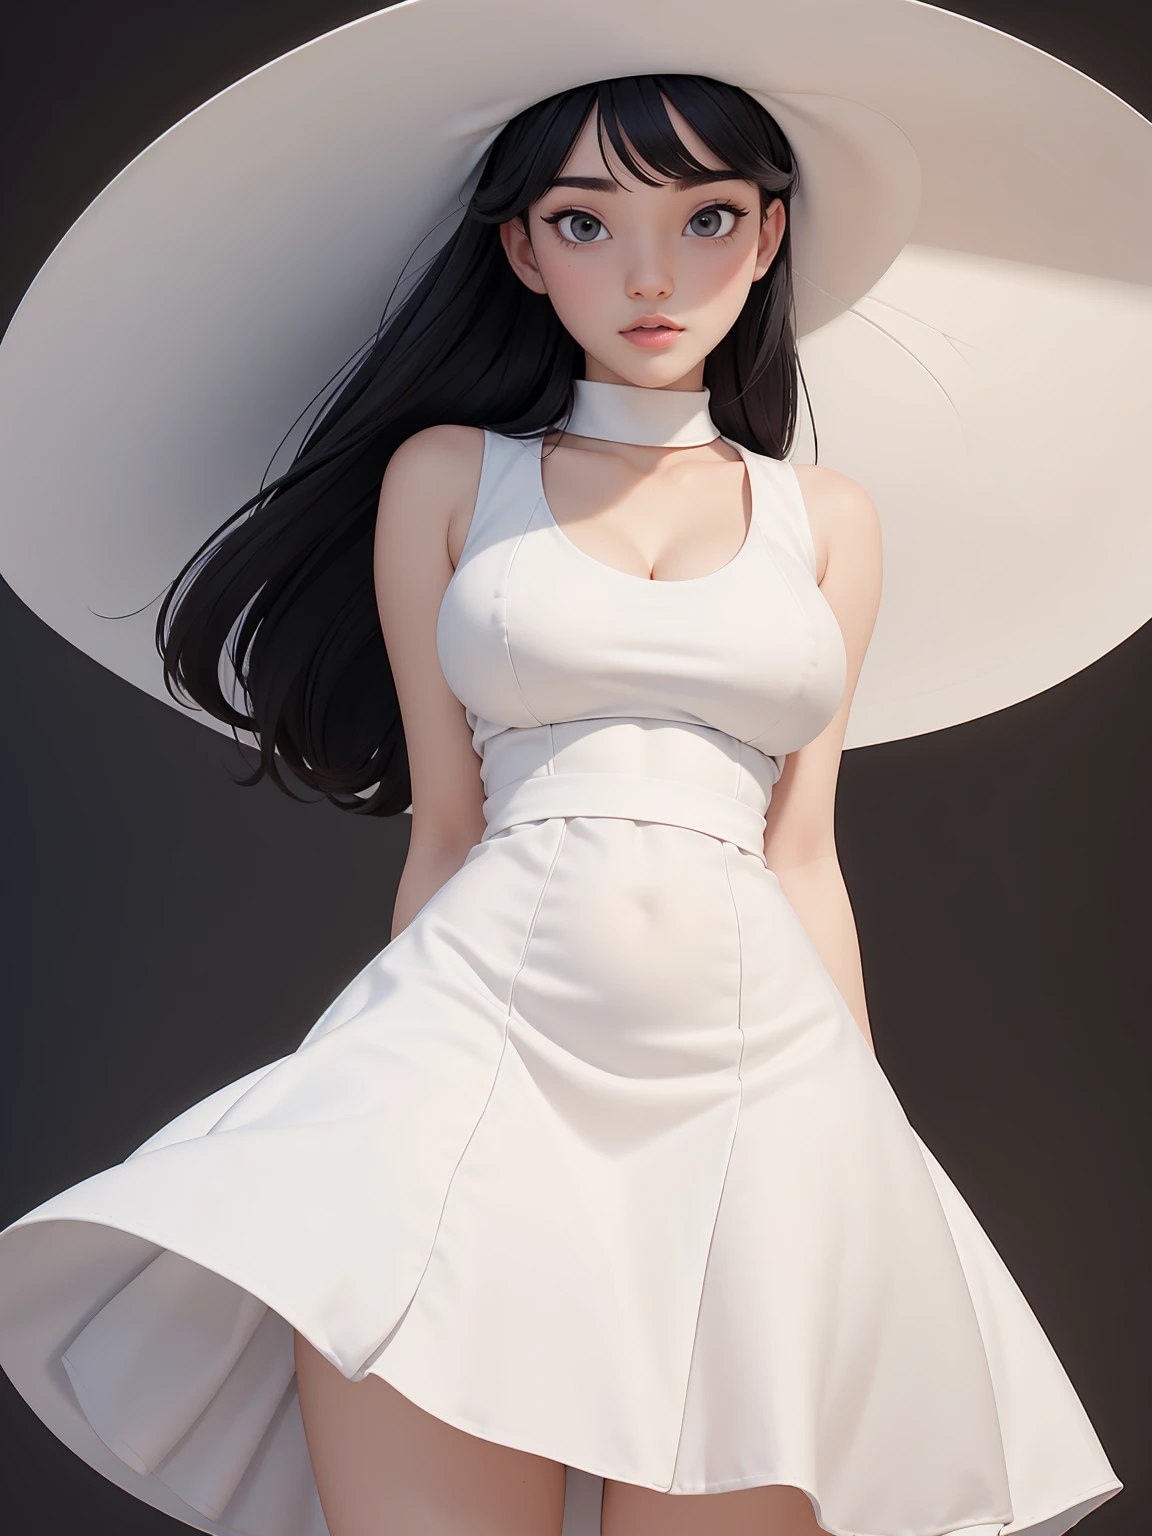 (최고의 품질, 걸작, 완벽한 얼굴) 흑발, 18세 창백한 소녀, 큰 가슴, 하얀색 원피스, 큰 흰색 모자
